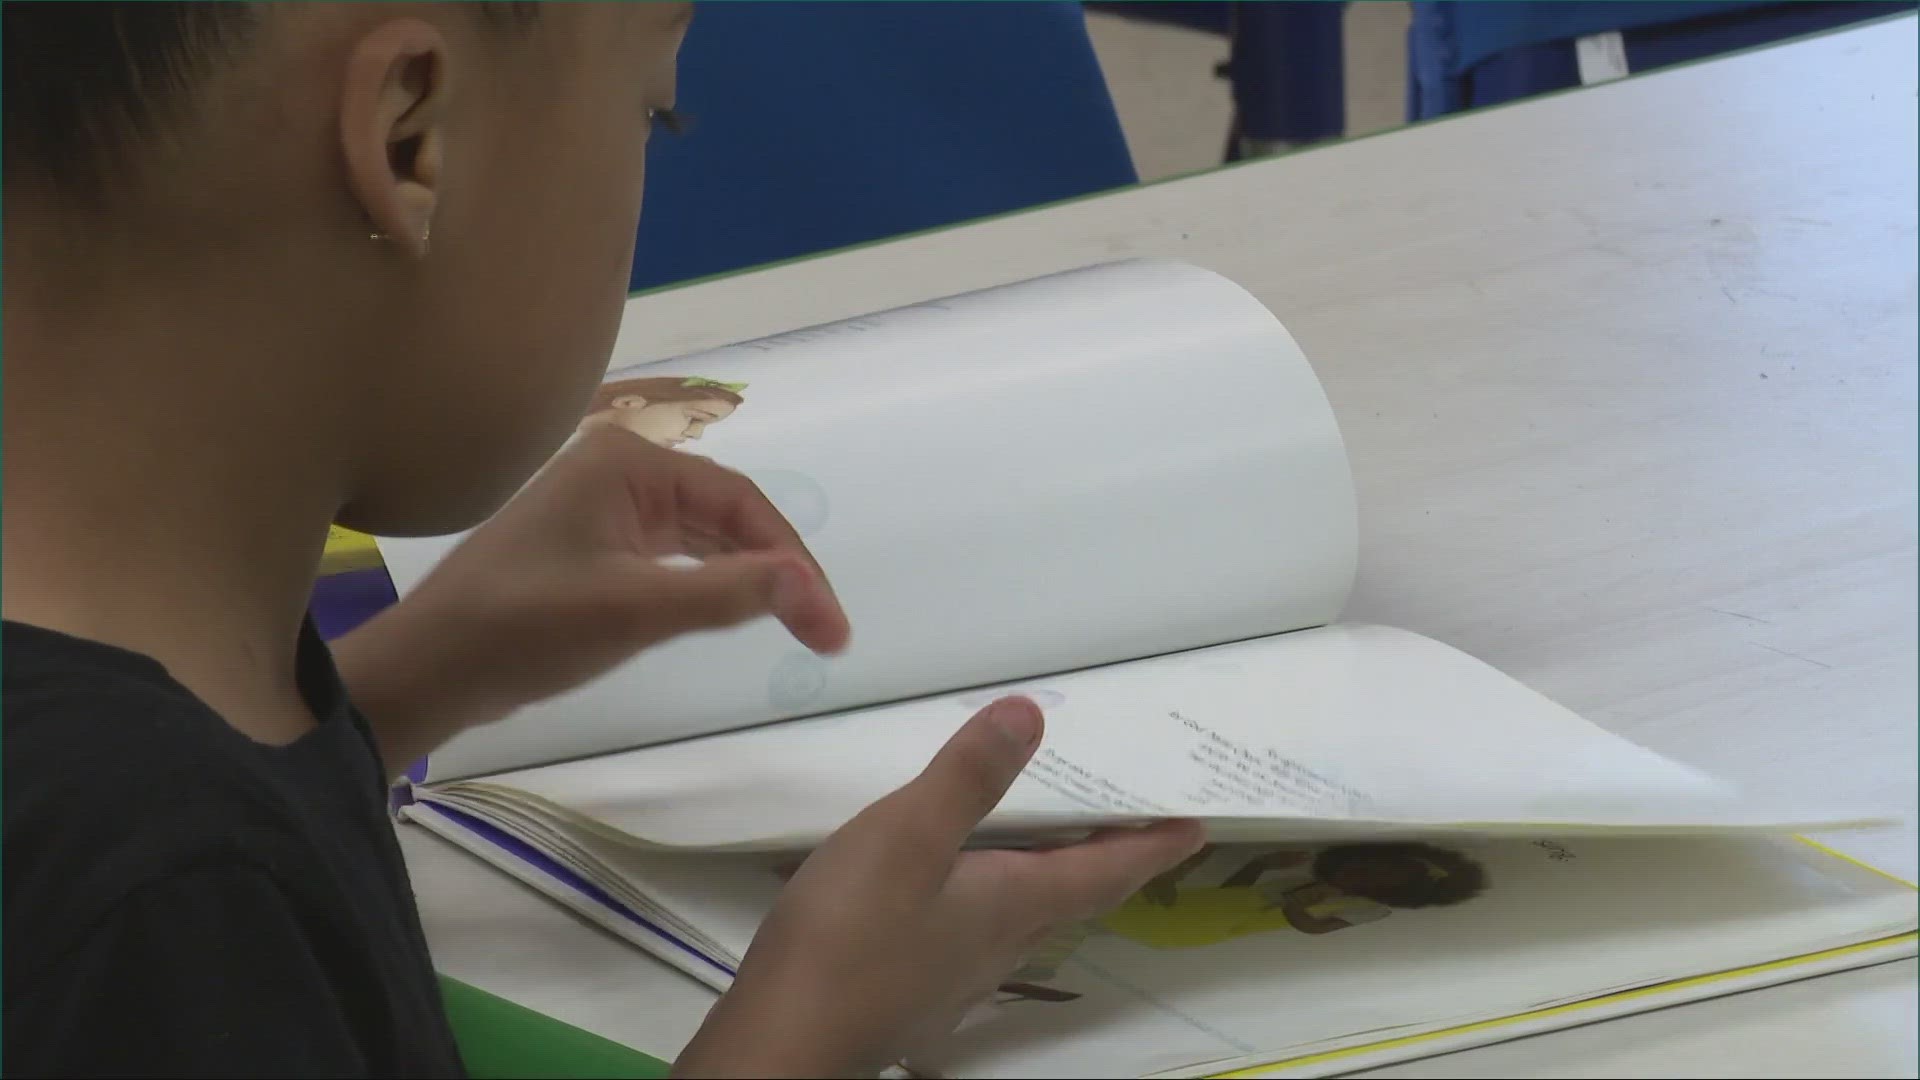 Each week, volunteers help young scholars strengthen their reading skills.